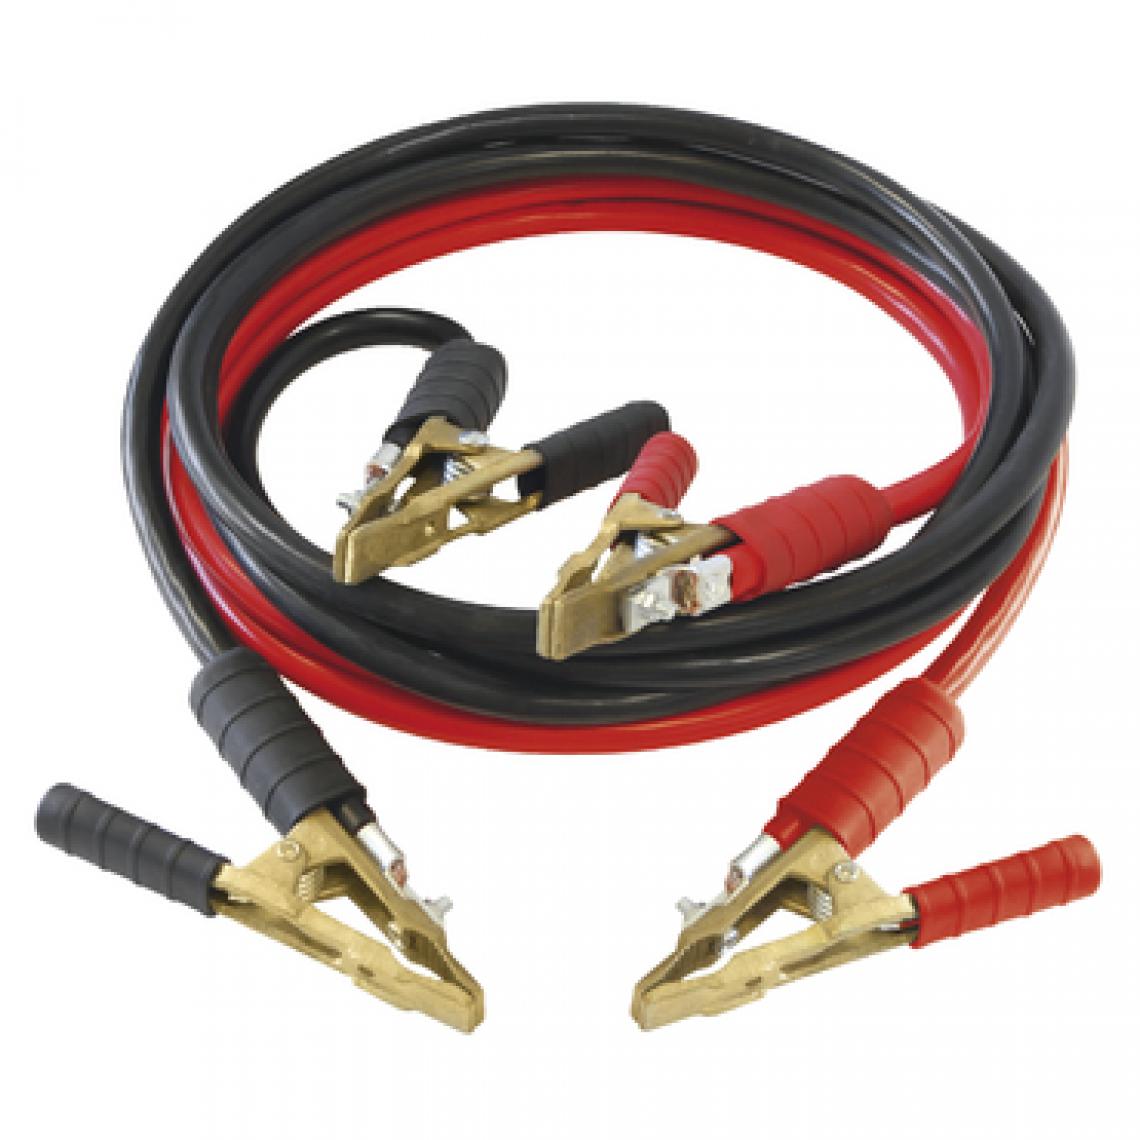 Gys - Gys - Câbles de démarrage 700 A Ø 35 mm² - 2x4,5 m pinces pro laiton - Consommables pour outillage motorisé